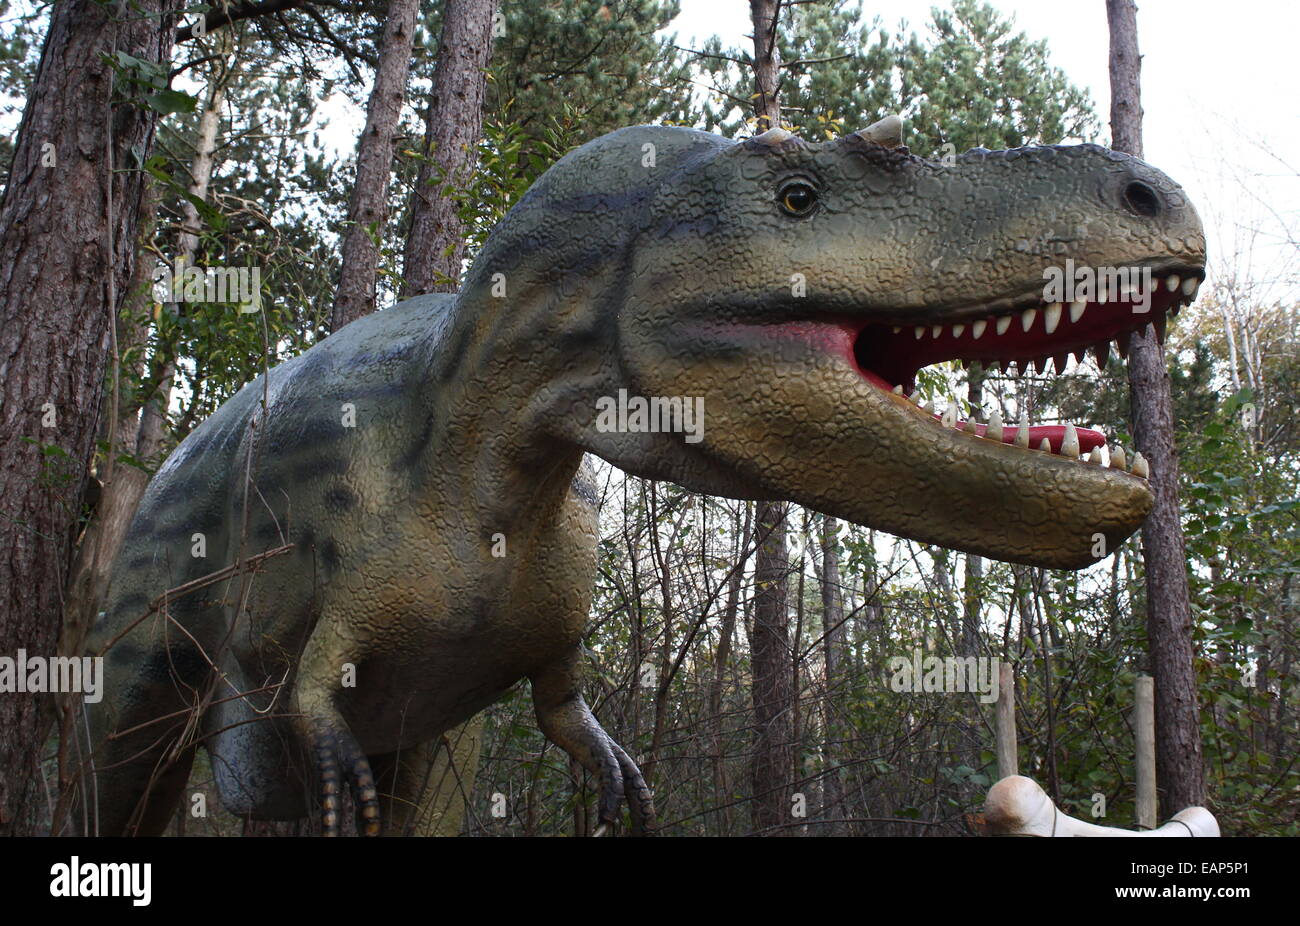 L'Albertosaurus nord-américain, un grand dinosaure carnivore de l'ère du Crétacé, à Amersfoort, Pays-Bas Dinopark Zoo Banque D'Images